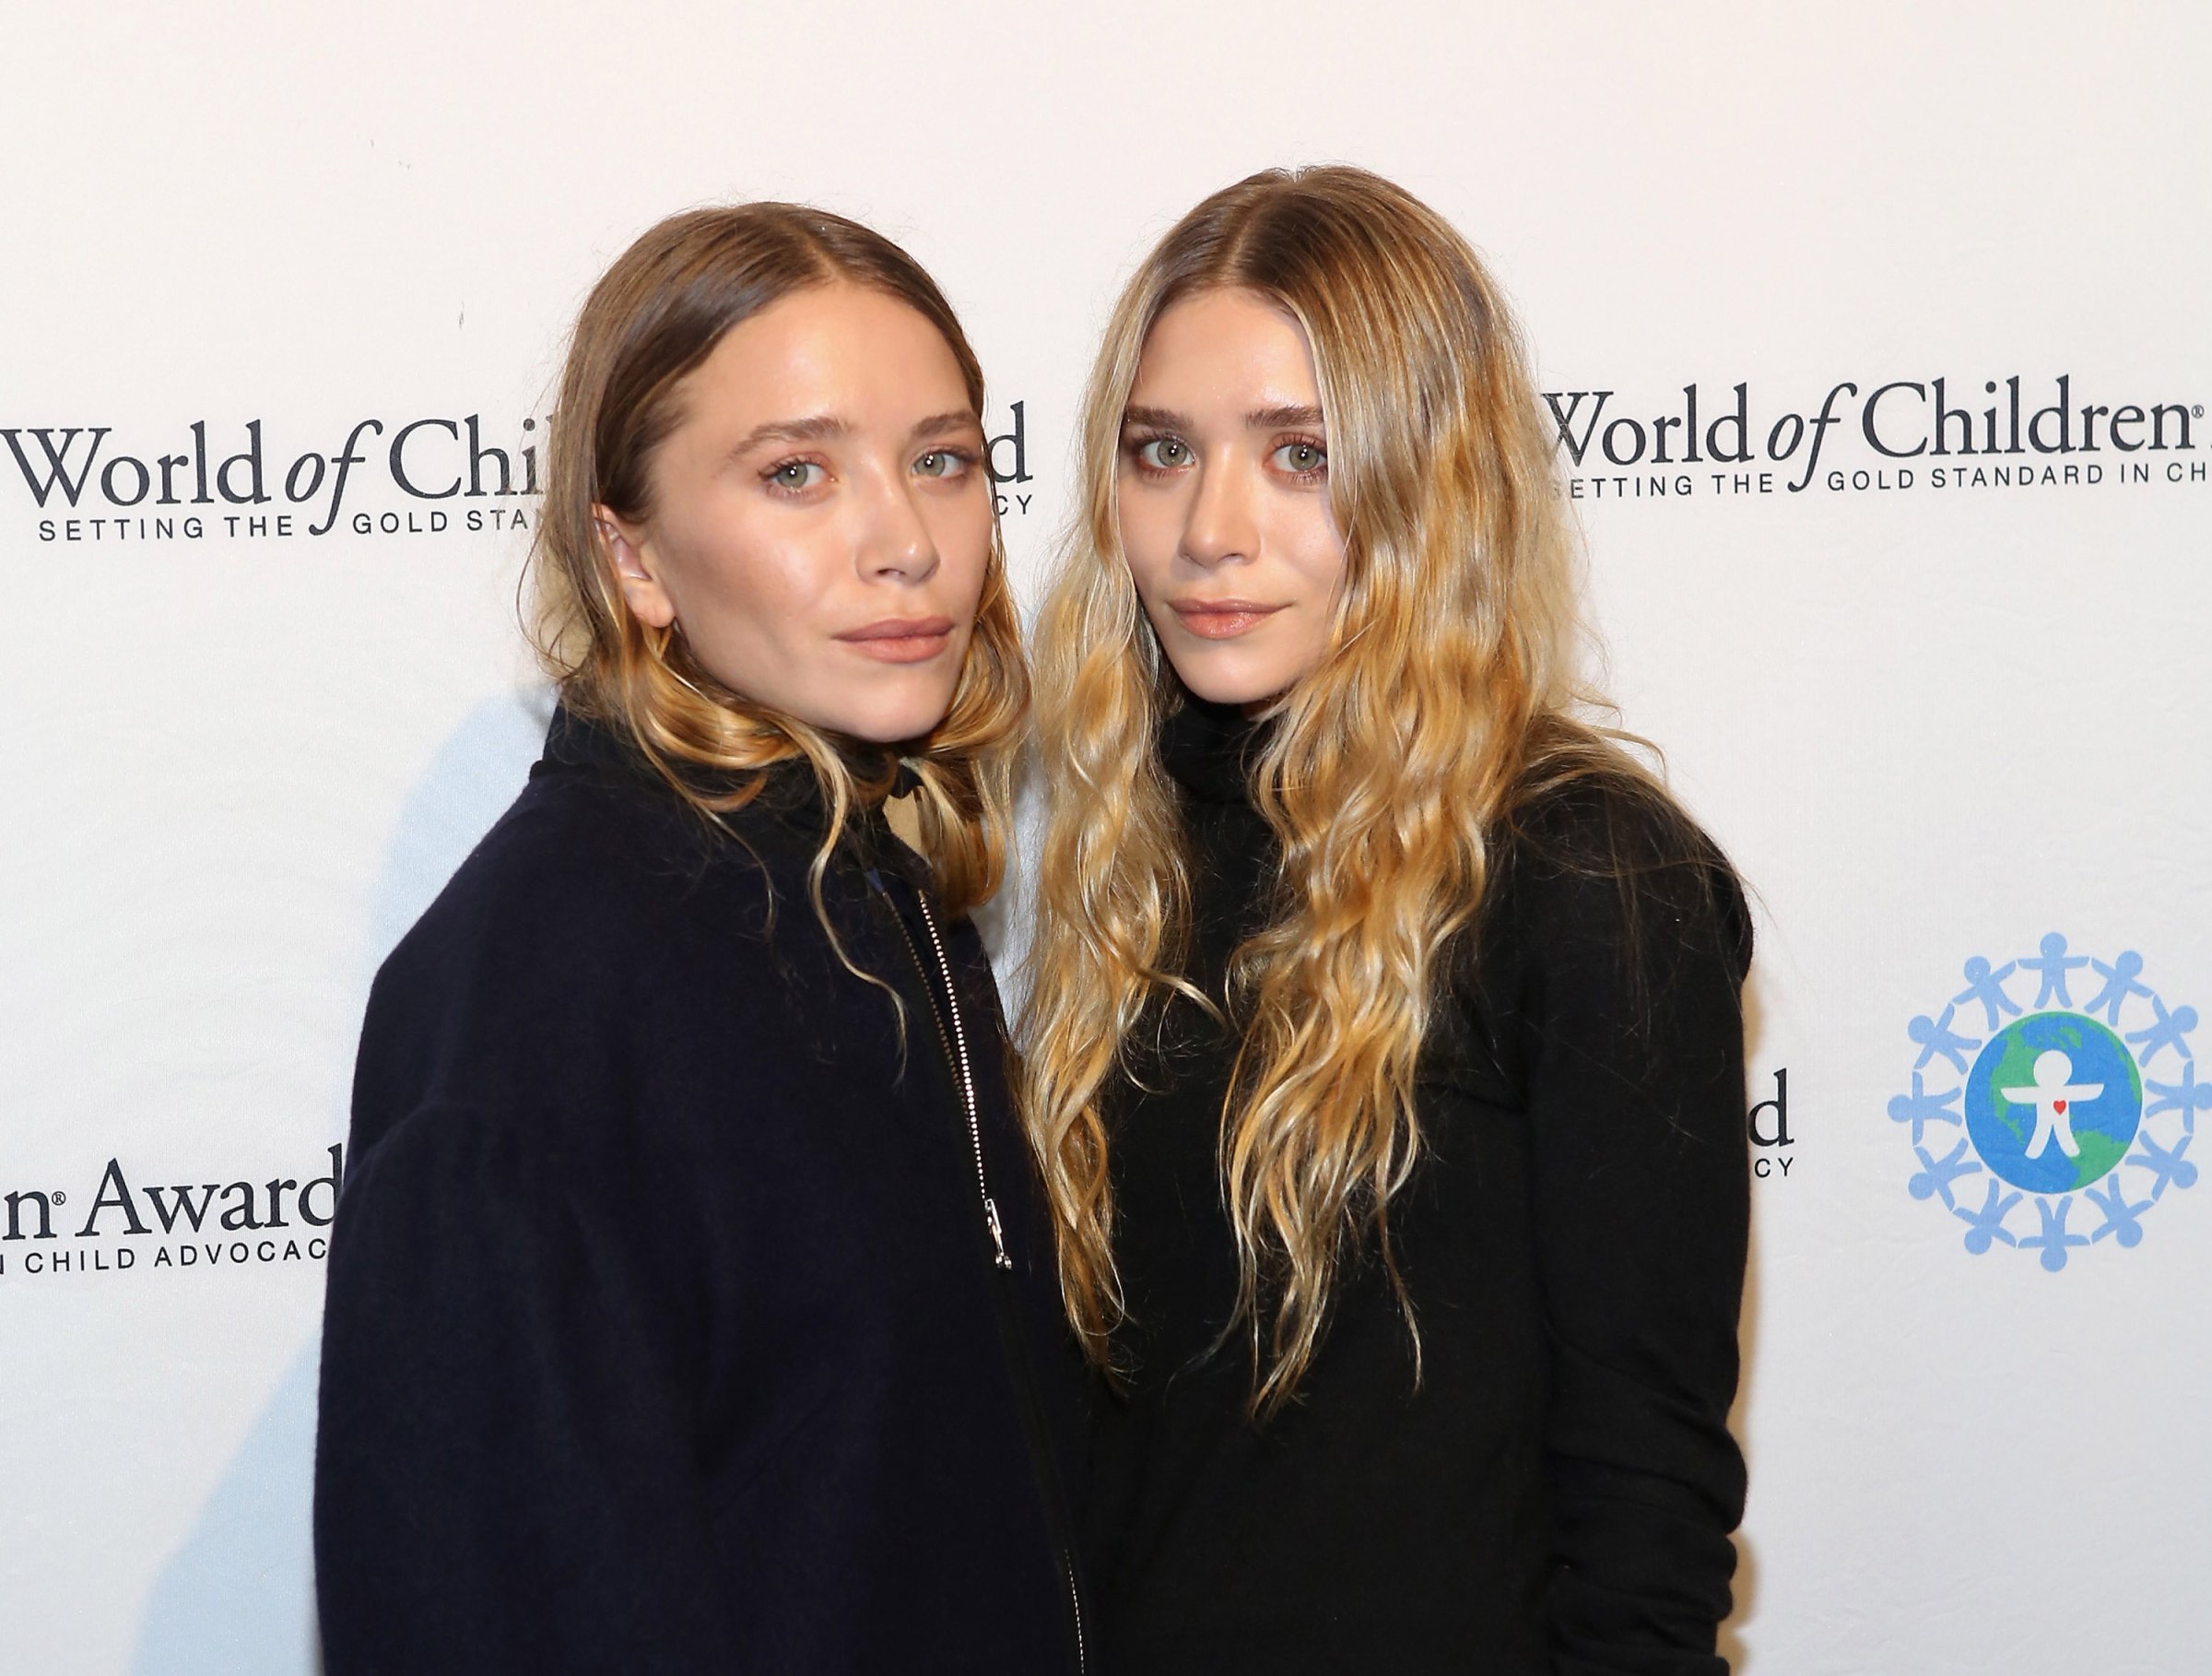 Mary-Kate Olsen and Ashley Olsen attend 2014 World Of Children Awards in New York City on Nov. 6, 2014.